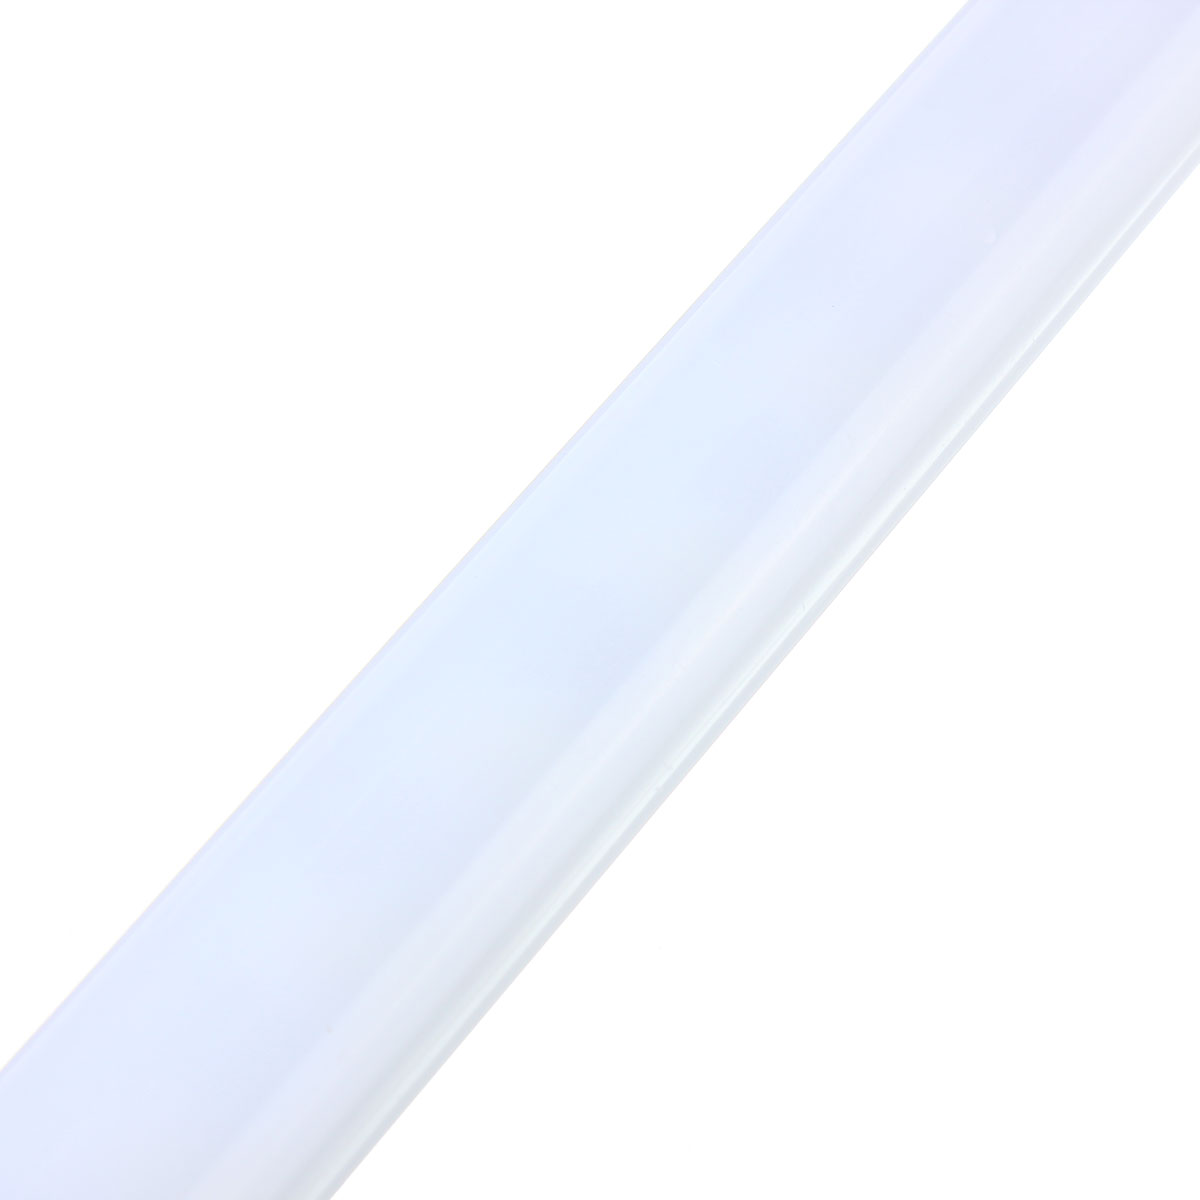 2-X-50CM-8520-SMD-Cool-White-LED-Rigid-Strip-Aluminum-Case-Cabinet-Tube-Light-Lamp-DC12V-1106669